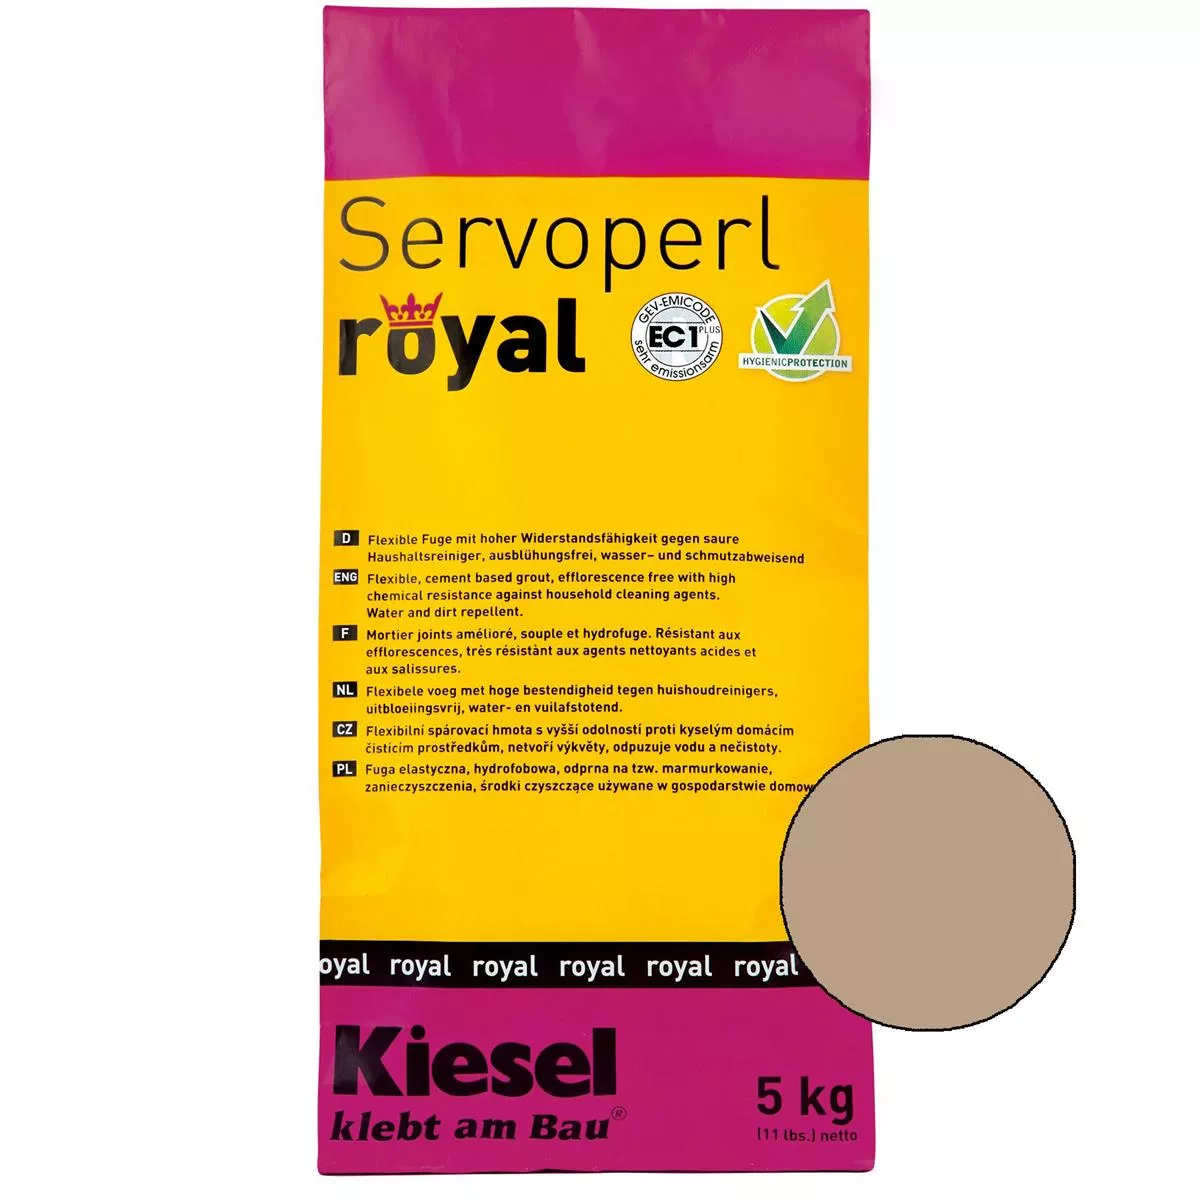 Kiesel Servoperl royal - Flexible, wasser- und schmutzabweisende Fuge (5KG Desert Sand)